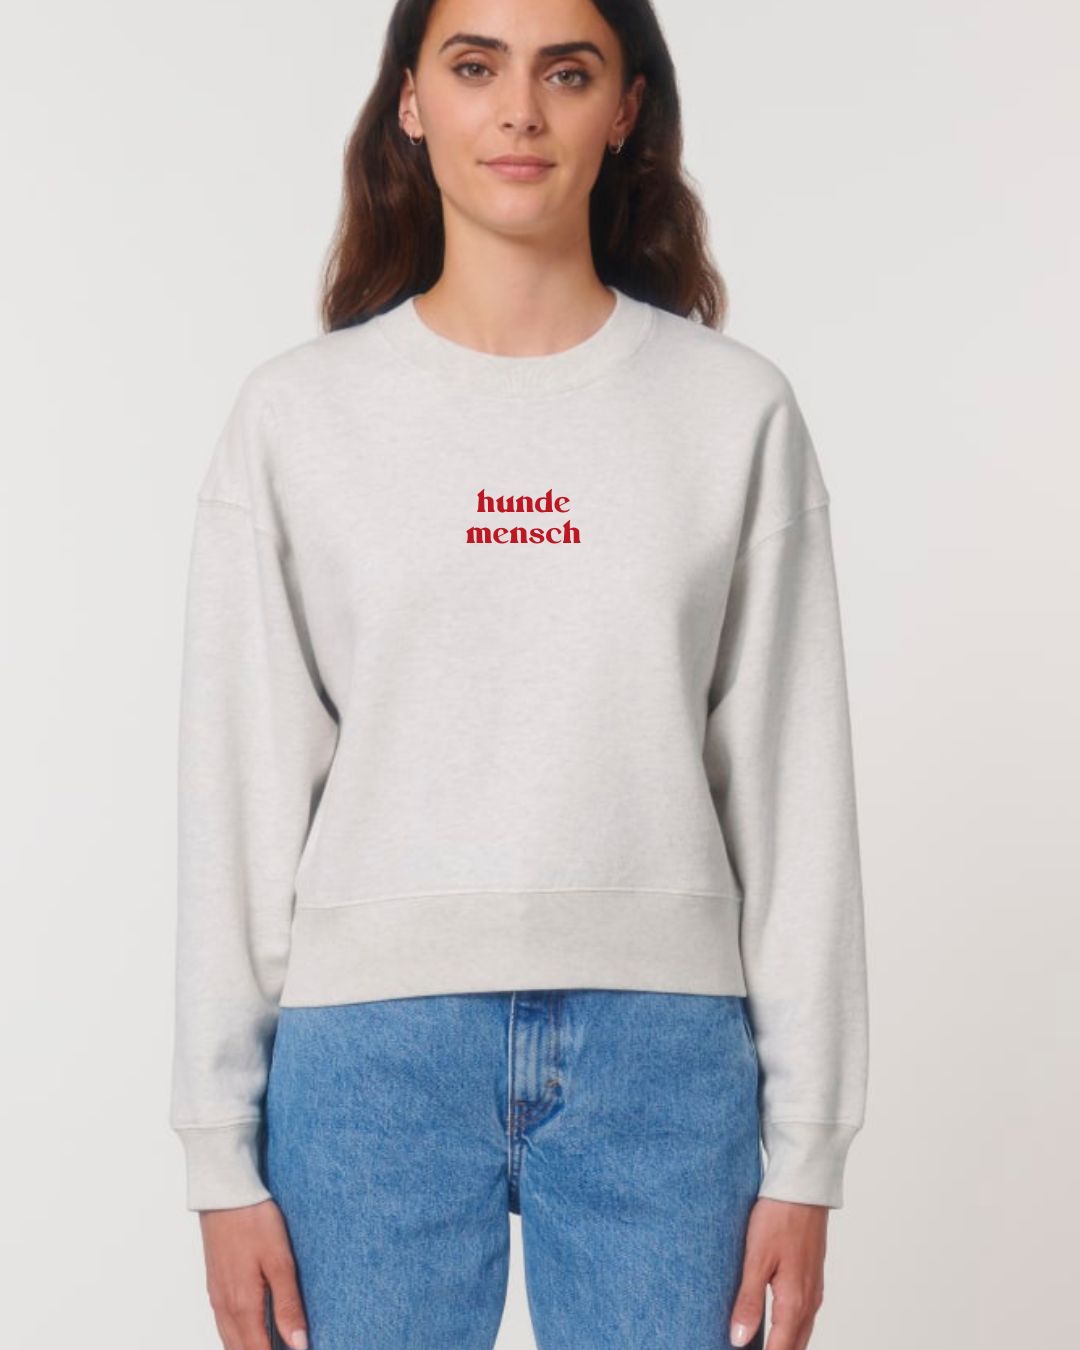 Premium Organic Sweatshirt 'Hundemensch'